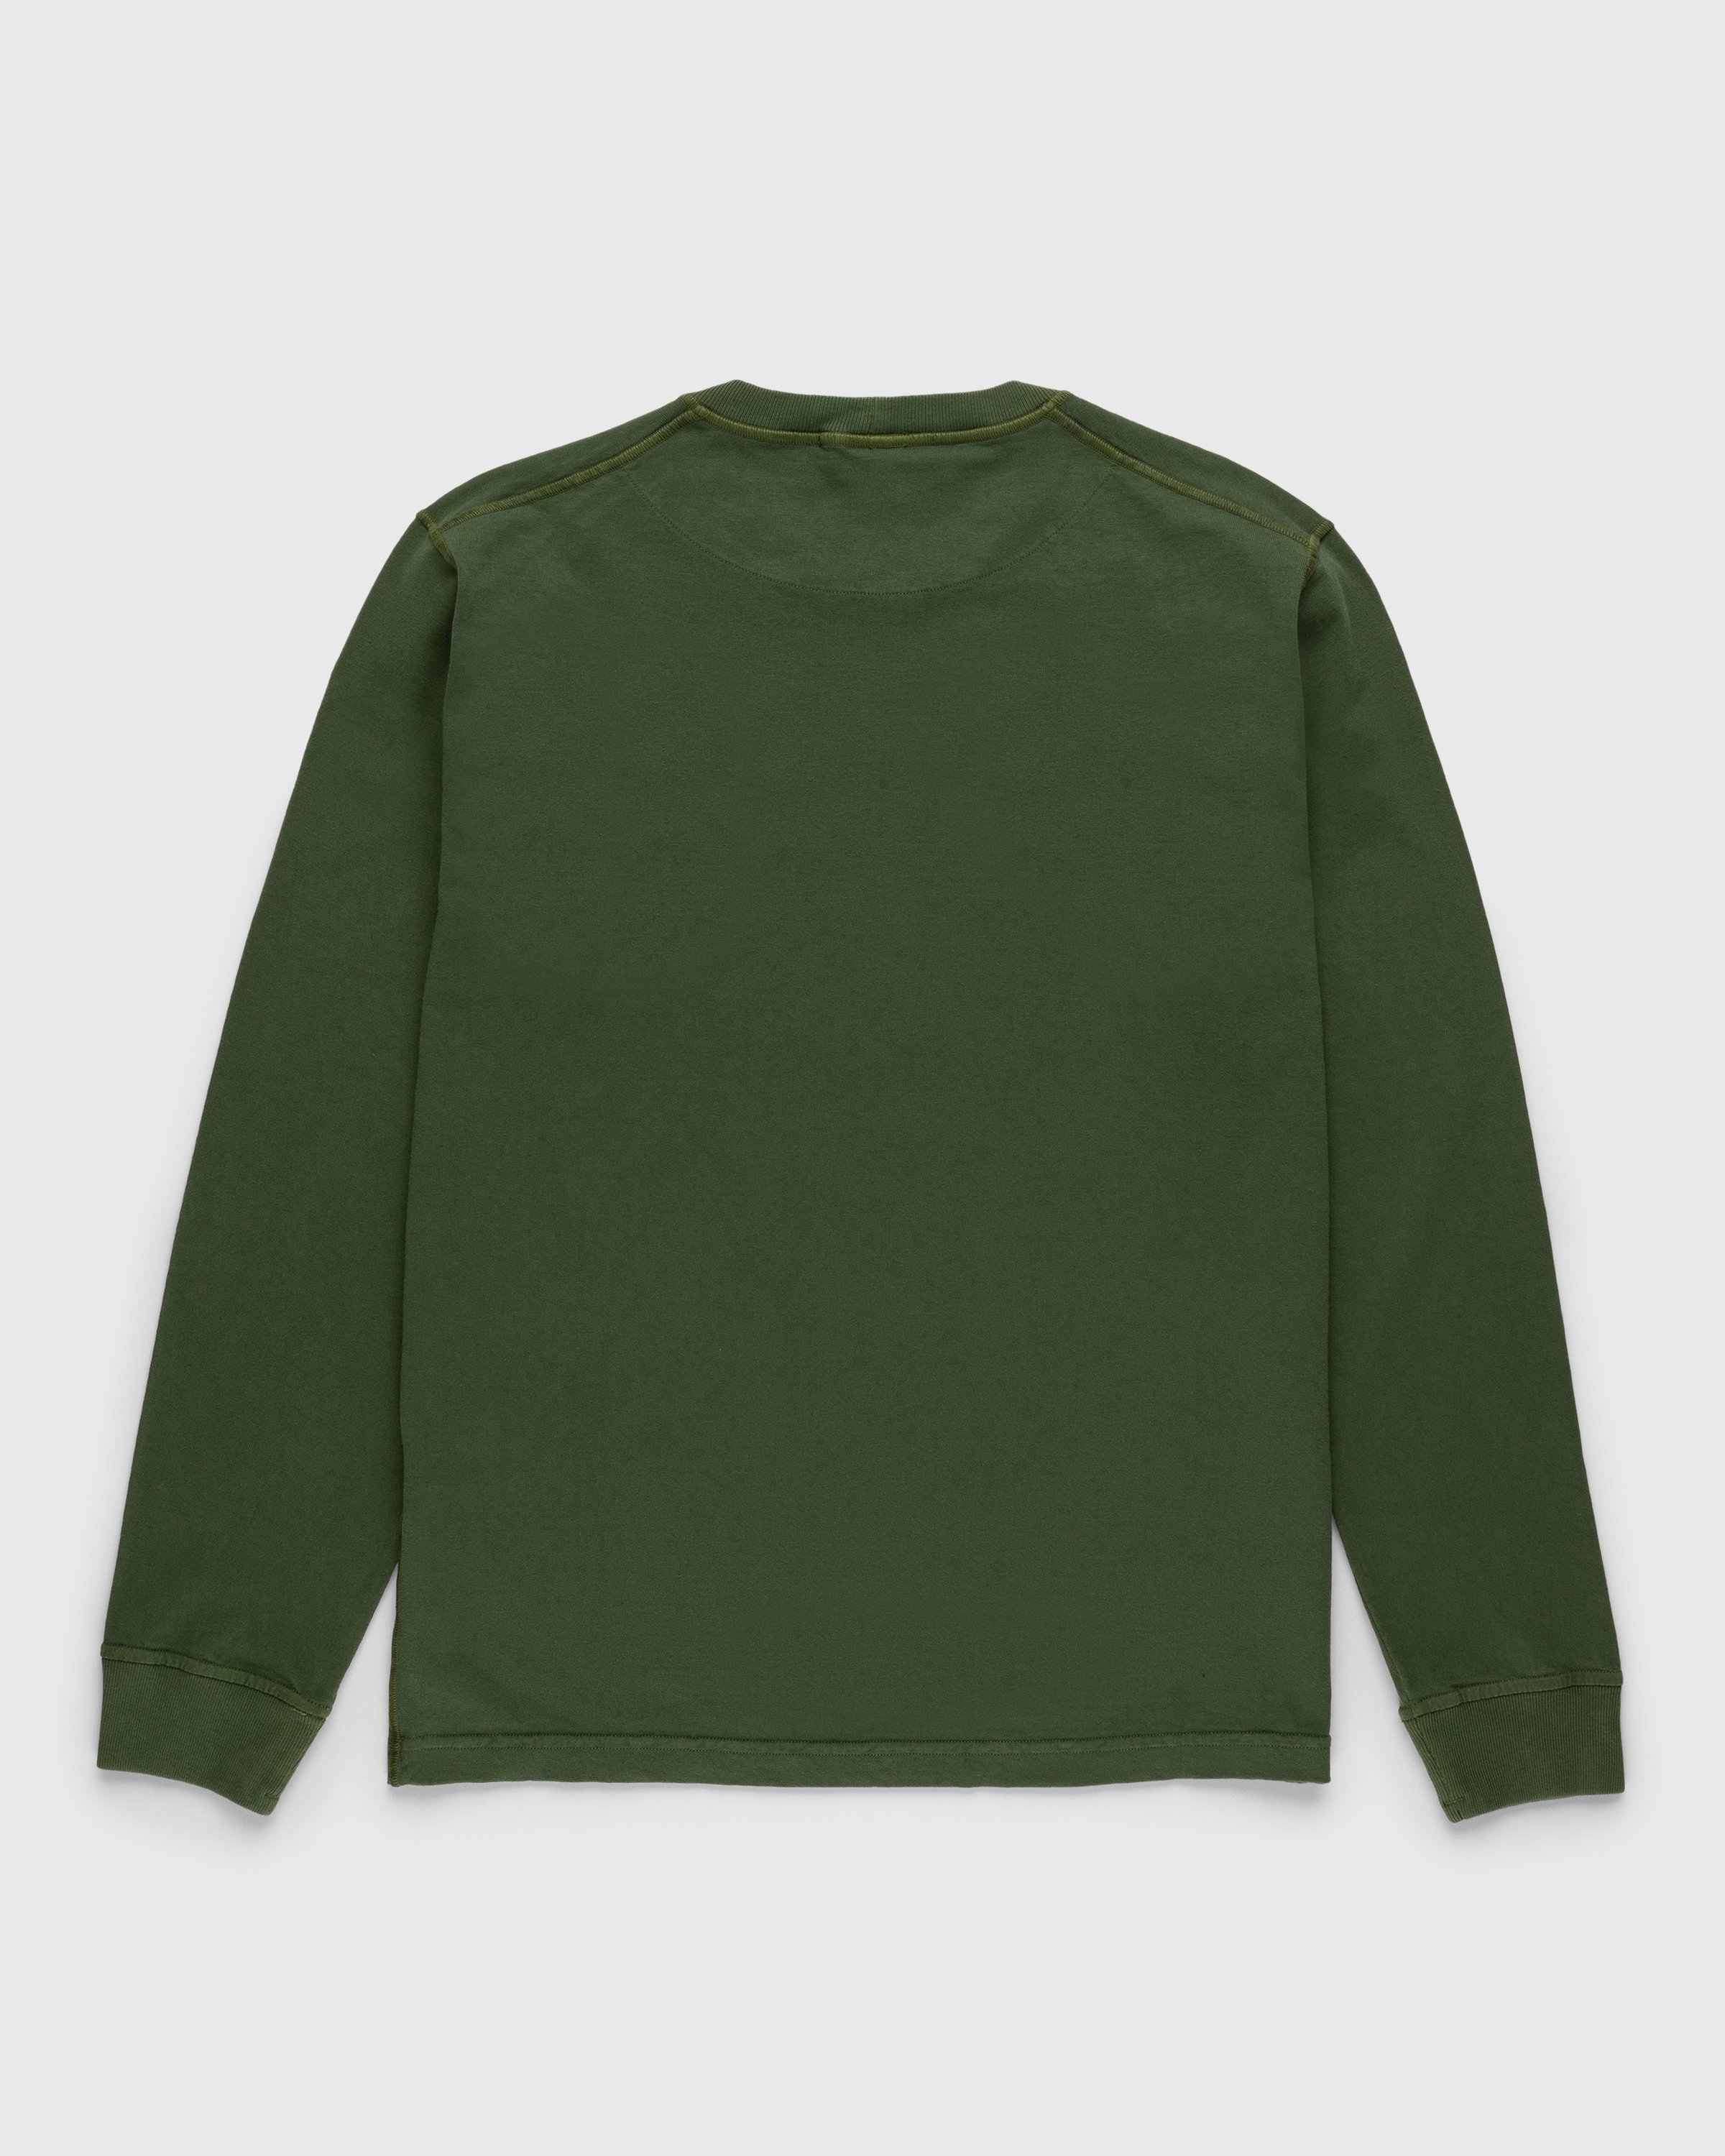 Stone Island - Fissato Longsleeve T-Shirt Olive - Clothing - Green - Image 2